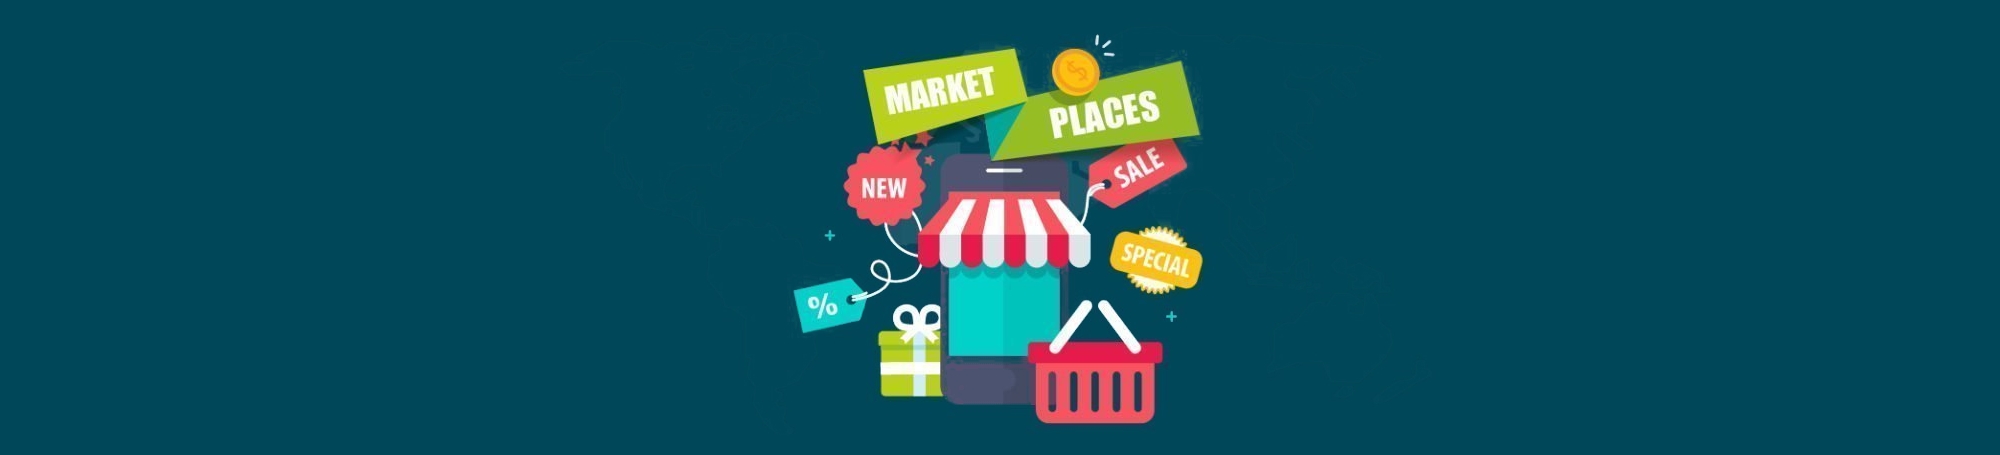 marketplaces-webzone